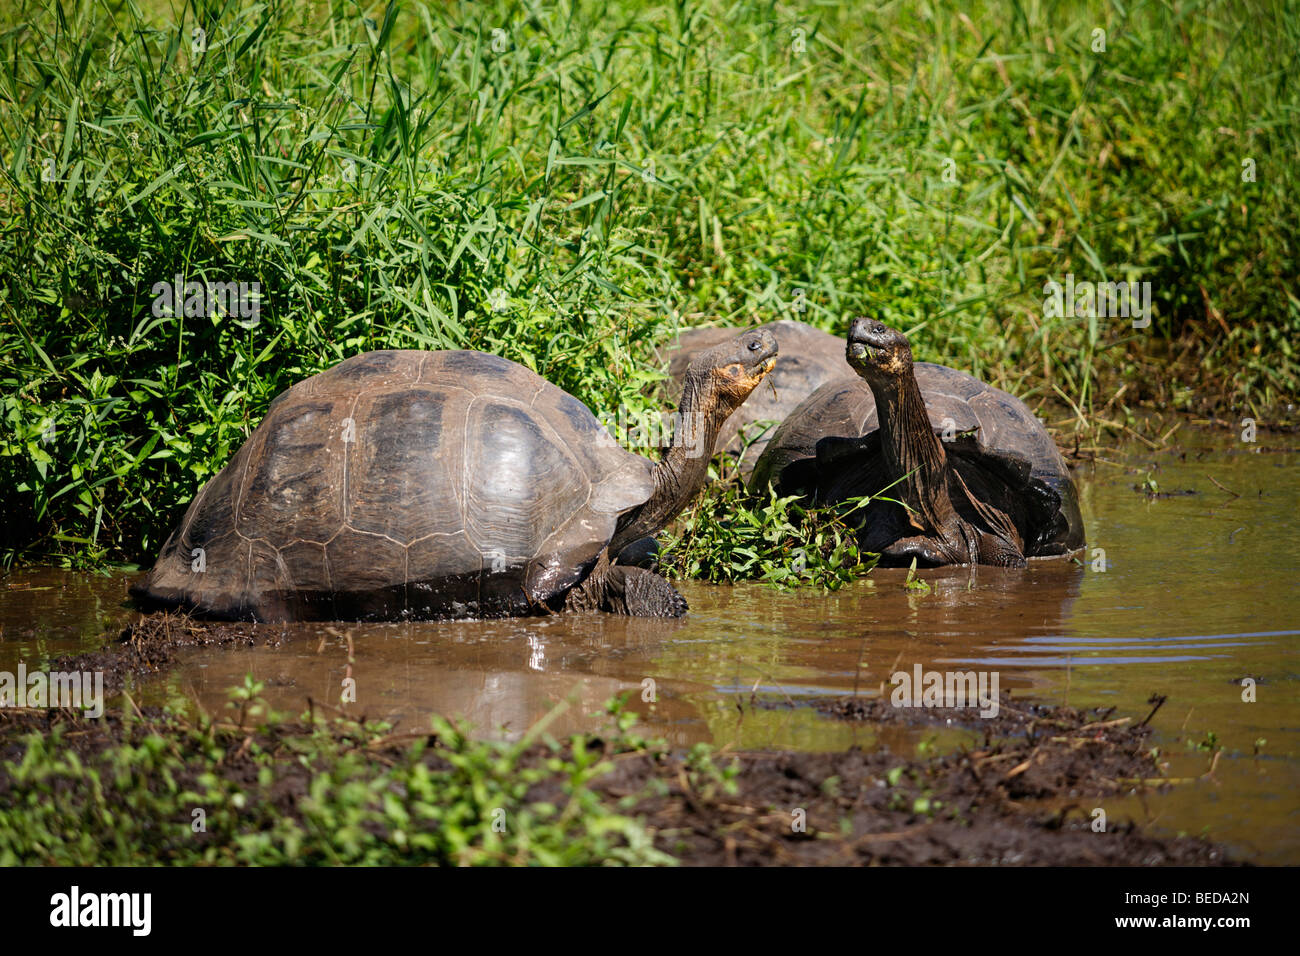 Les tortues géantes des Galapagos (Chelonoidis nigra porteri) à l'highland marécageuse la lutte pour le territoire, l'île de Santa Cruz, Indefat Banque D'Images